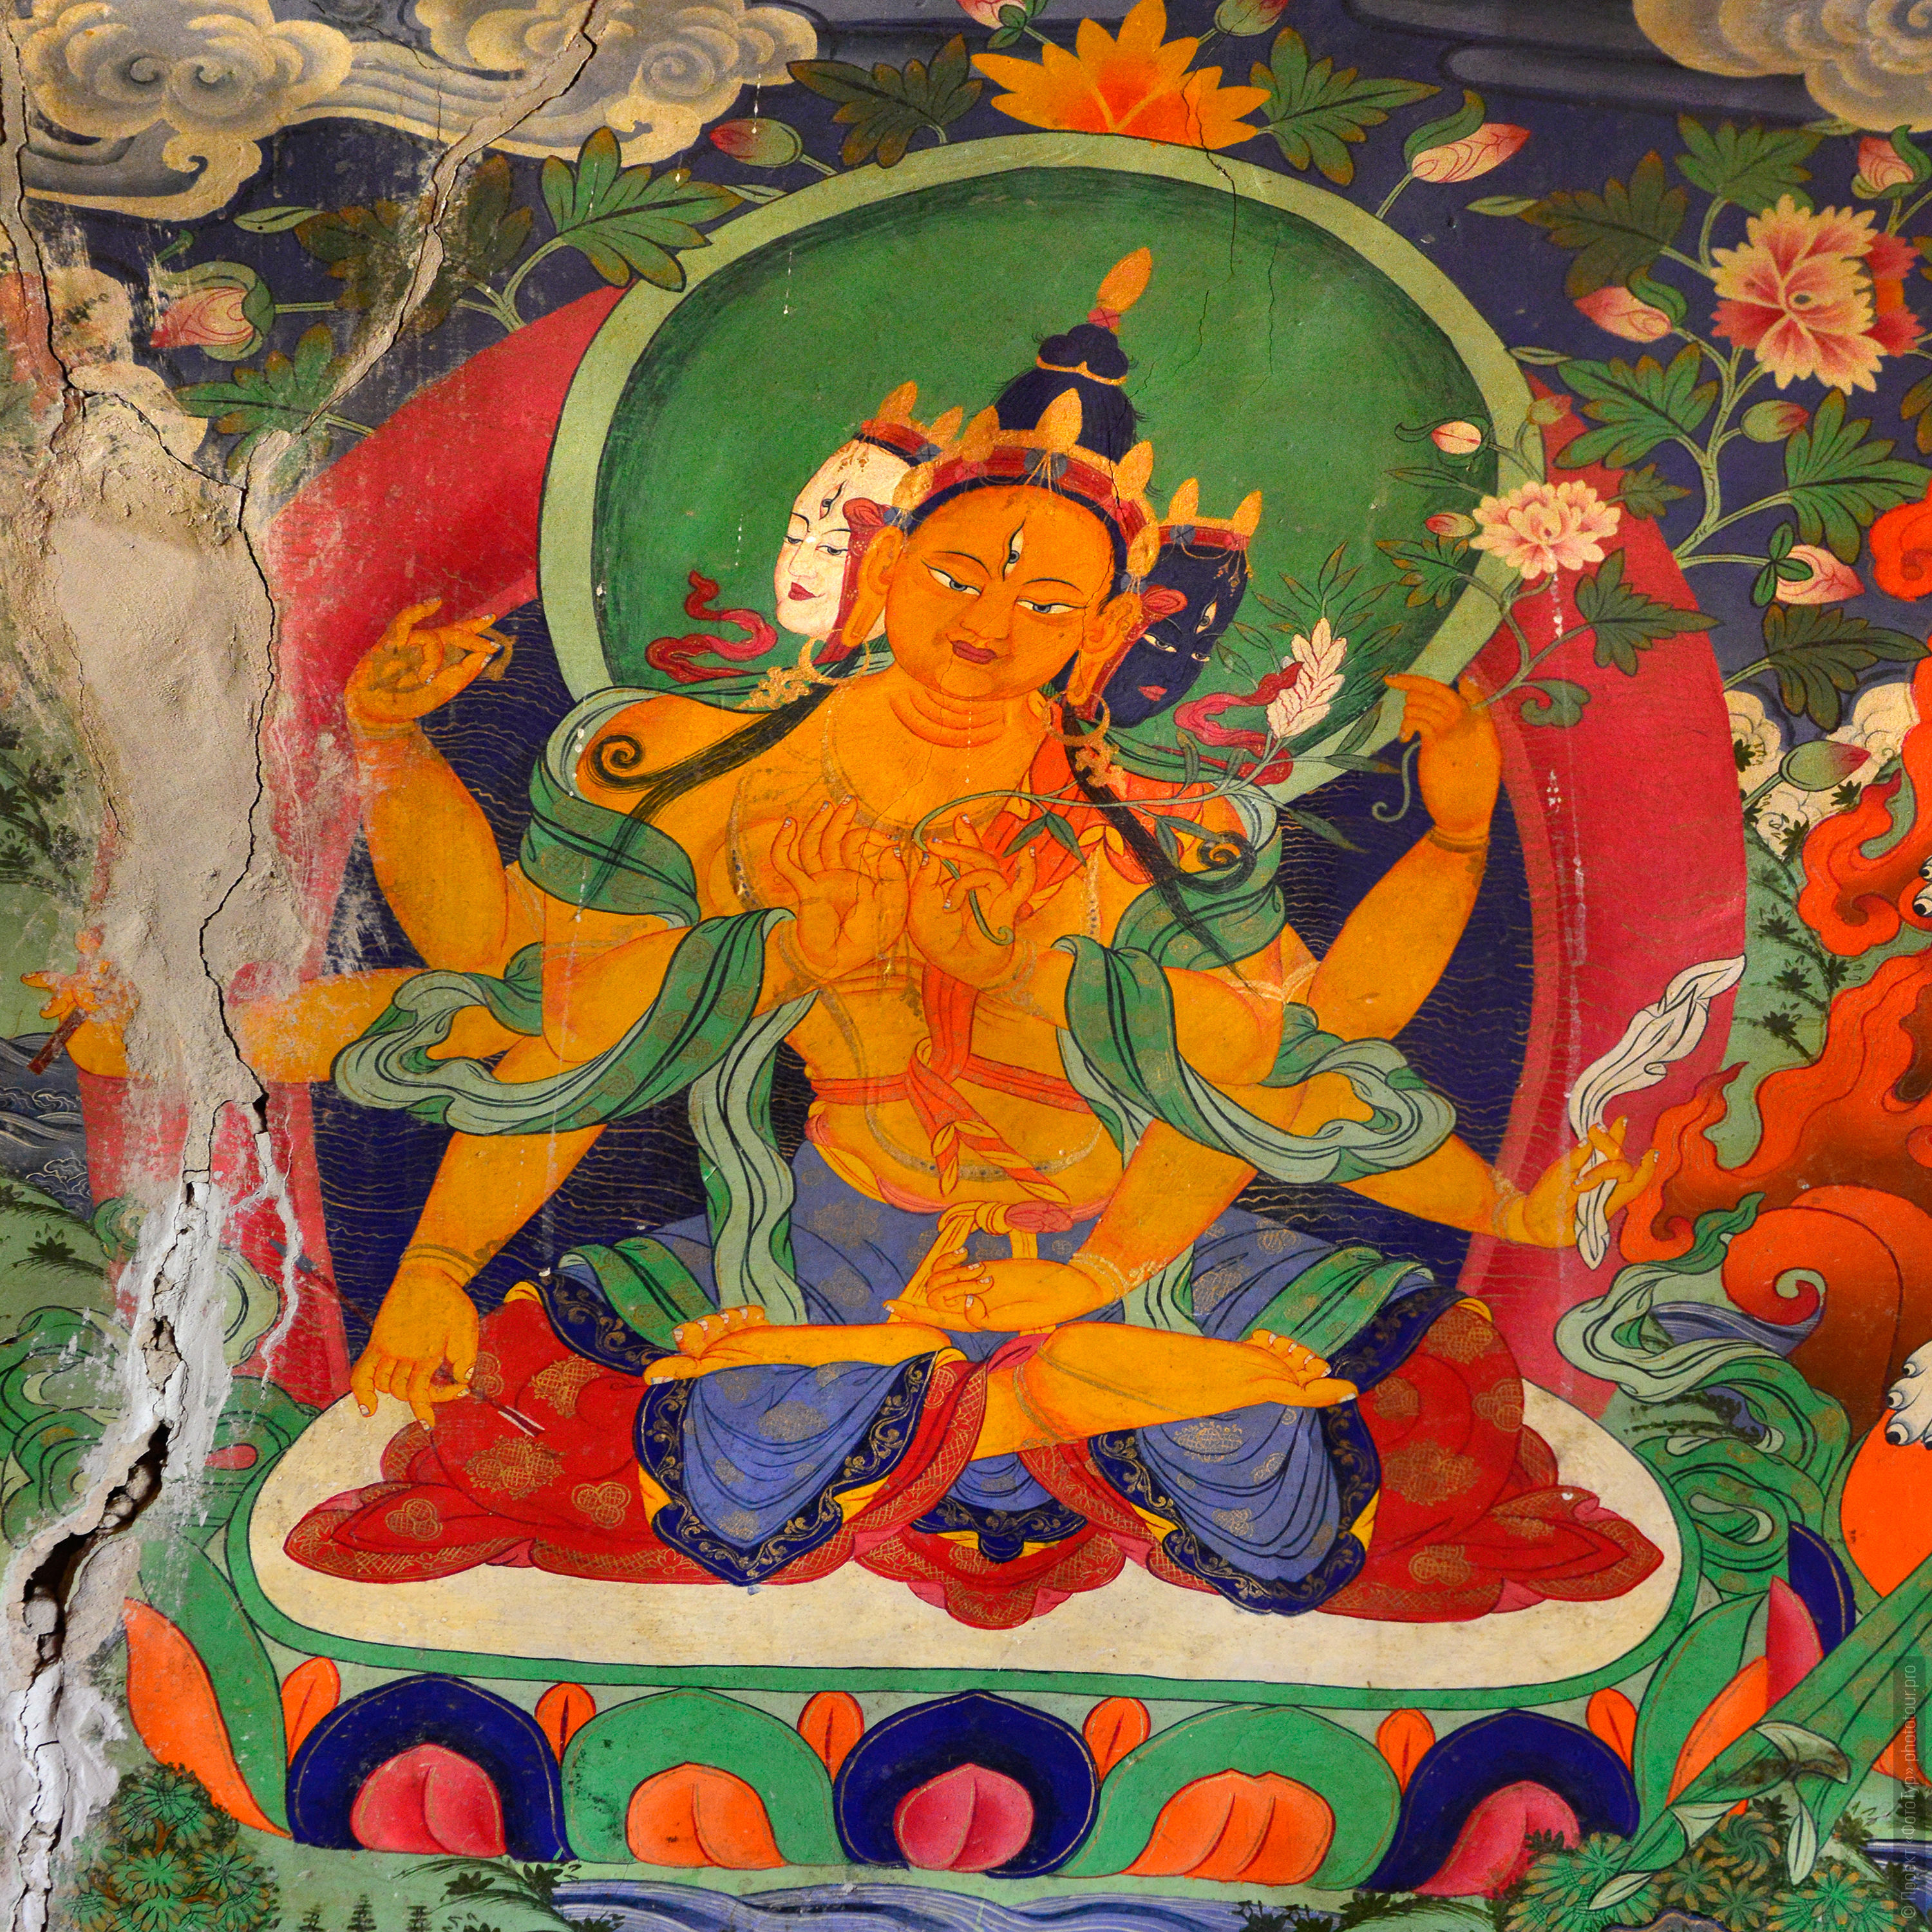 Настенная фреска с изображением Будды Шакьямуни, монастырь Карча Гонпа, Занскар. Туры в Занскар с Проектом Фототур в 2015 году.